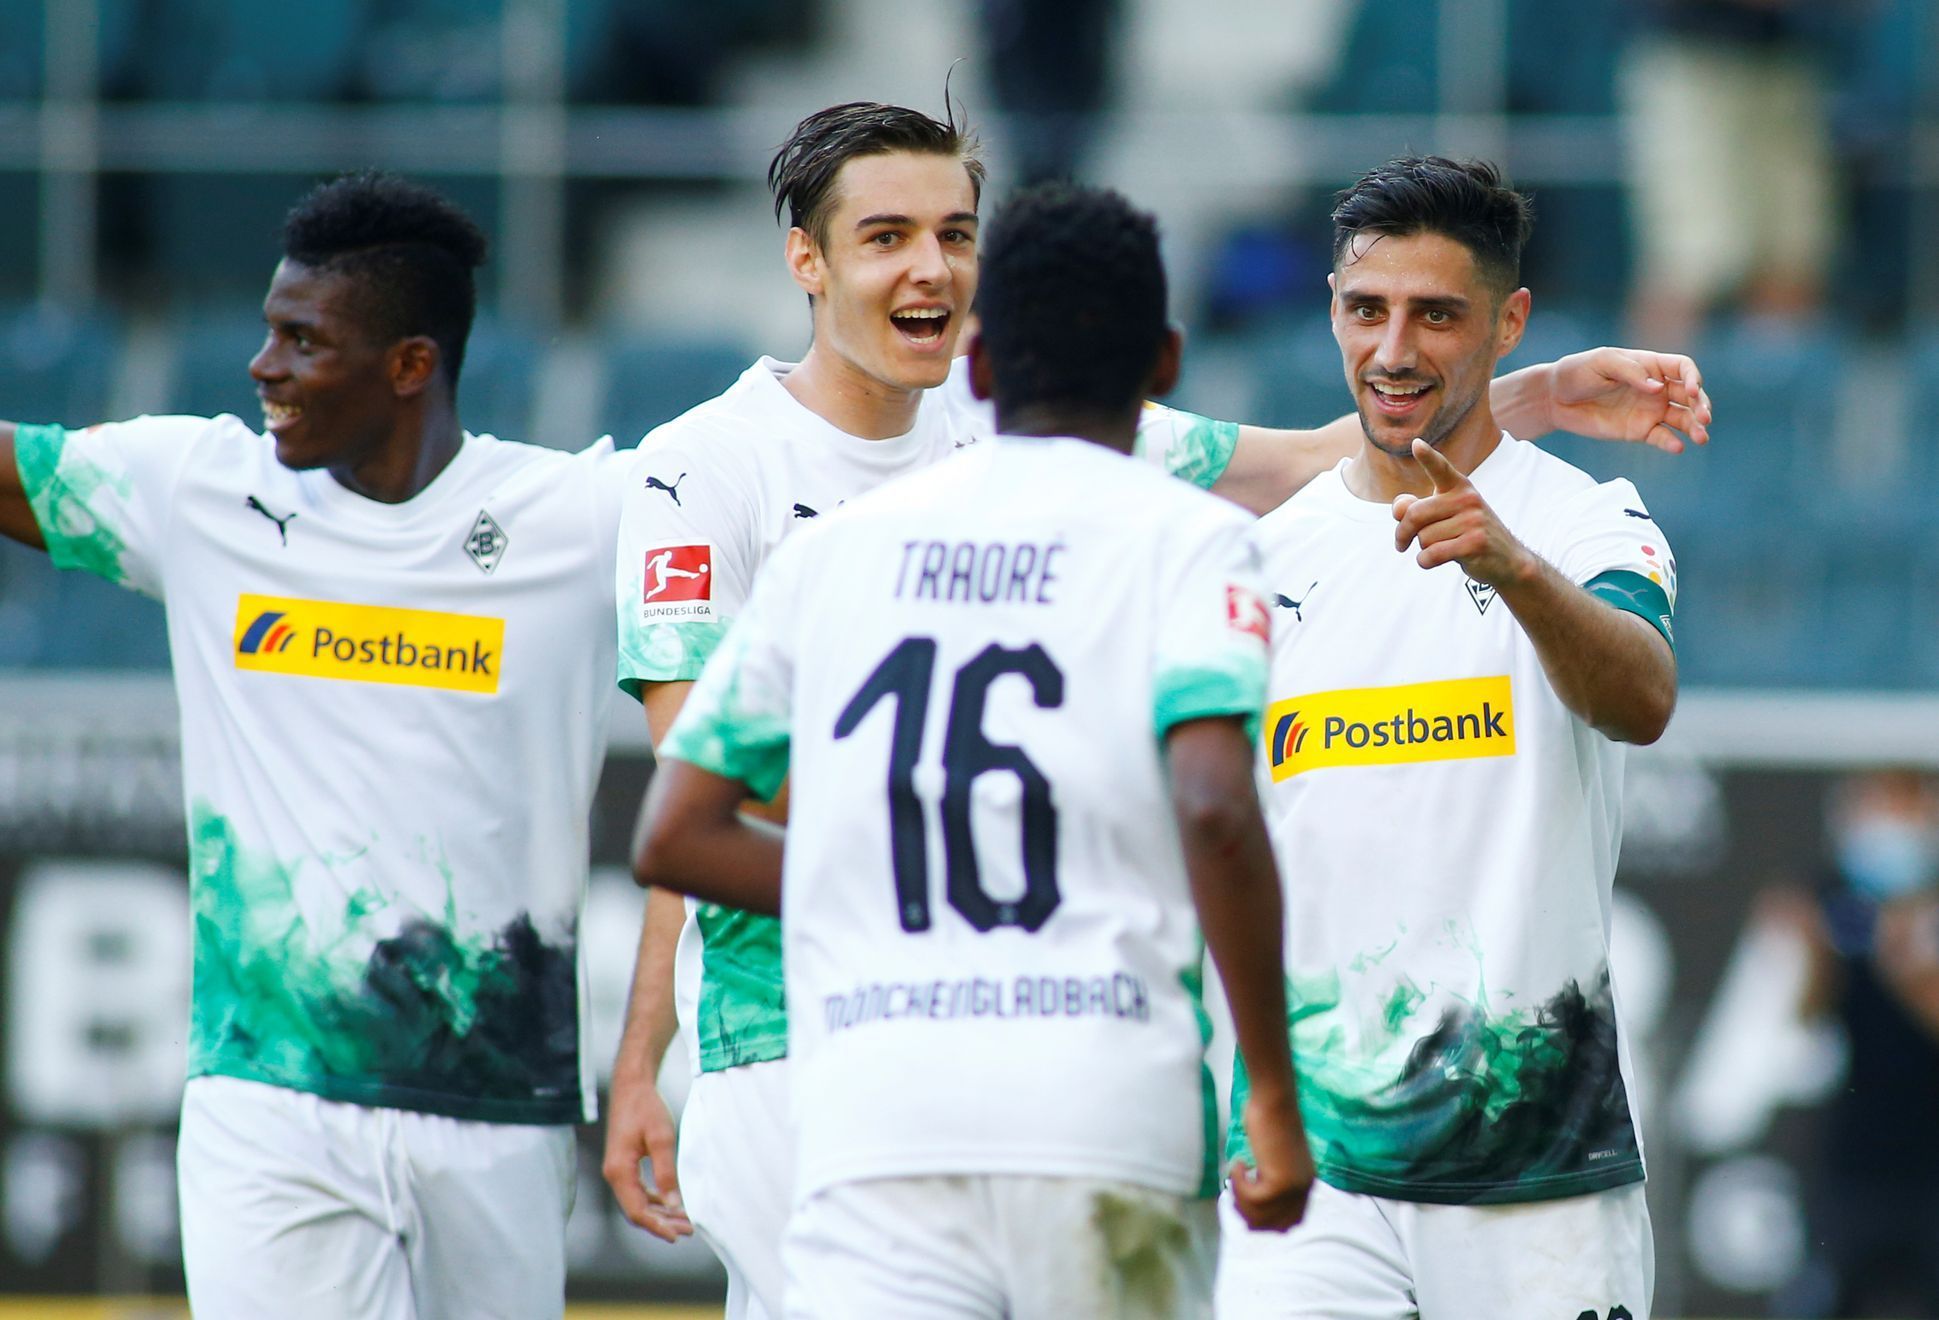 32. kolo německé fotbalové ligy 2019/20, Mönchengladbach - Wolfsburg: Domácí fotbalisté se radují z gólu